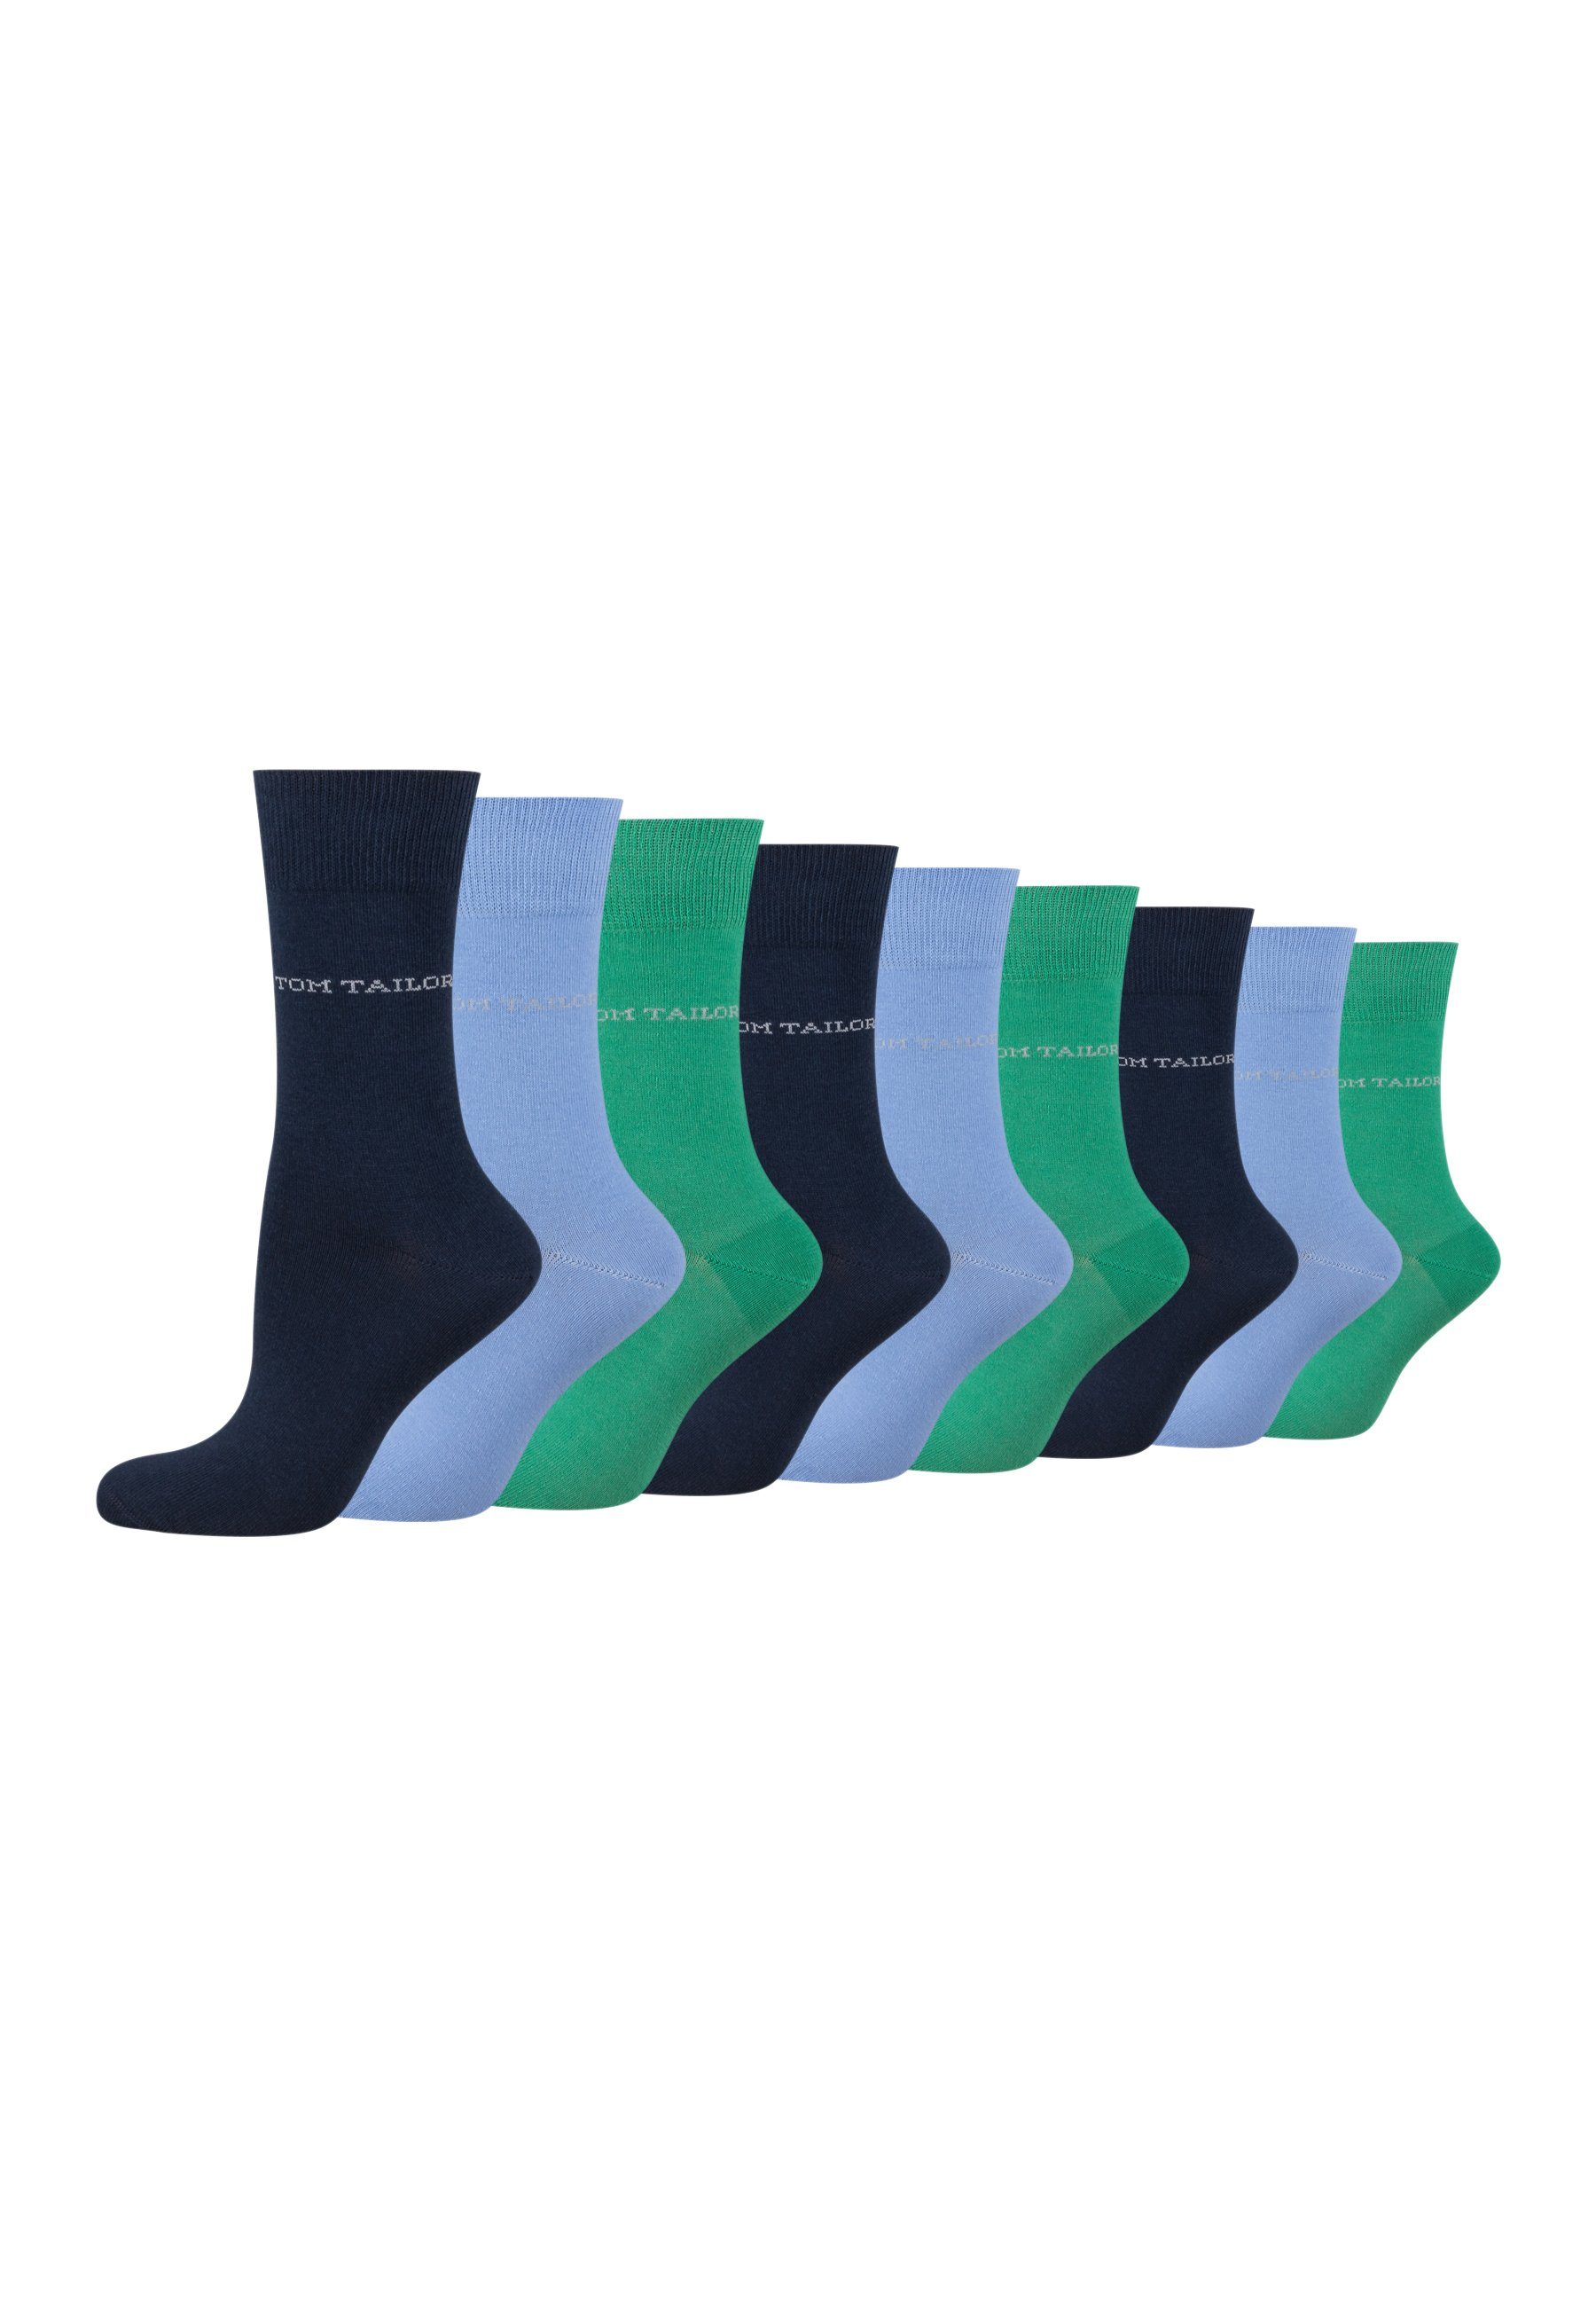 TOM TAILOR Socken 9609396042_9 TOM TAILOR Socken Damen – Baumwollsocken für Alltag und Freizeit 9 Paar blue